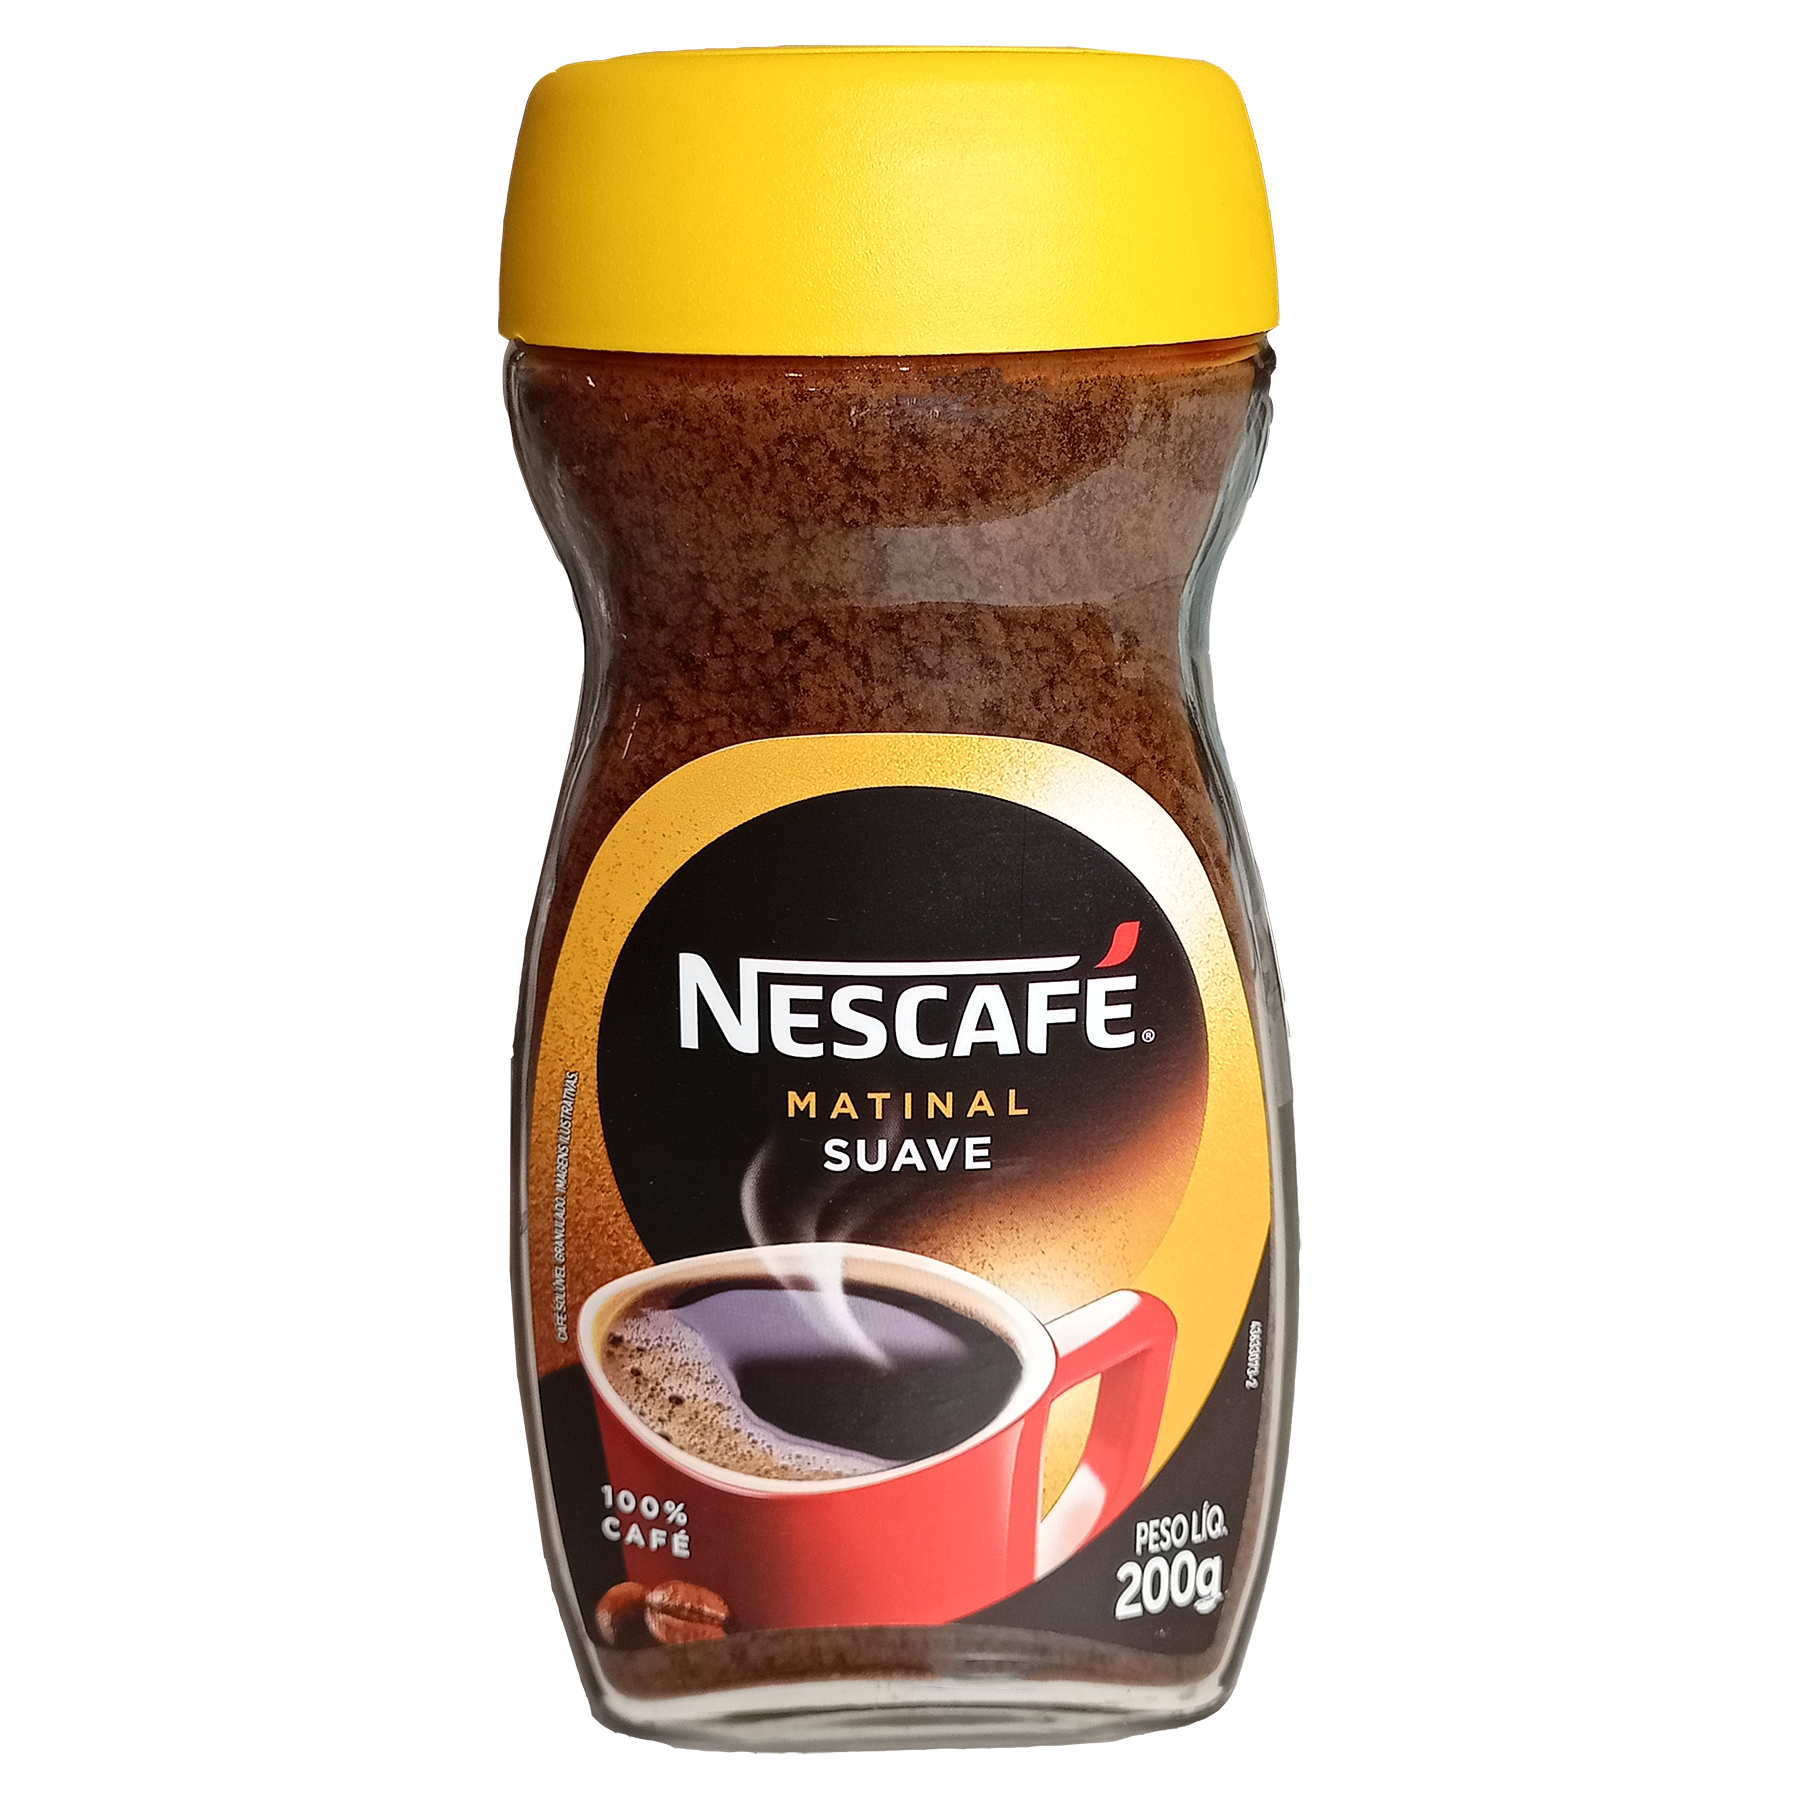 قهوه فوری ماتینال نسکافه - 200 گرم